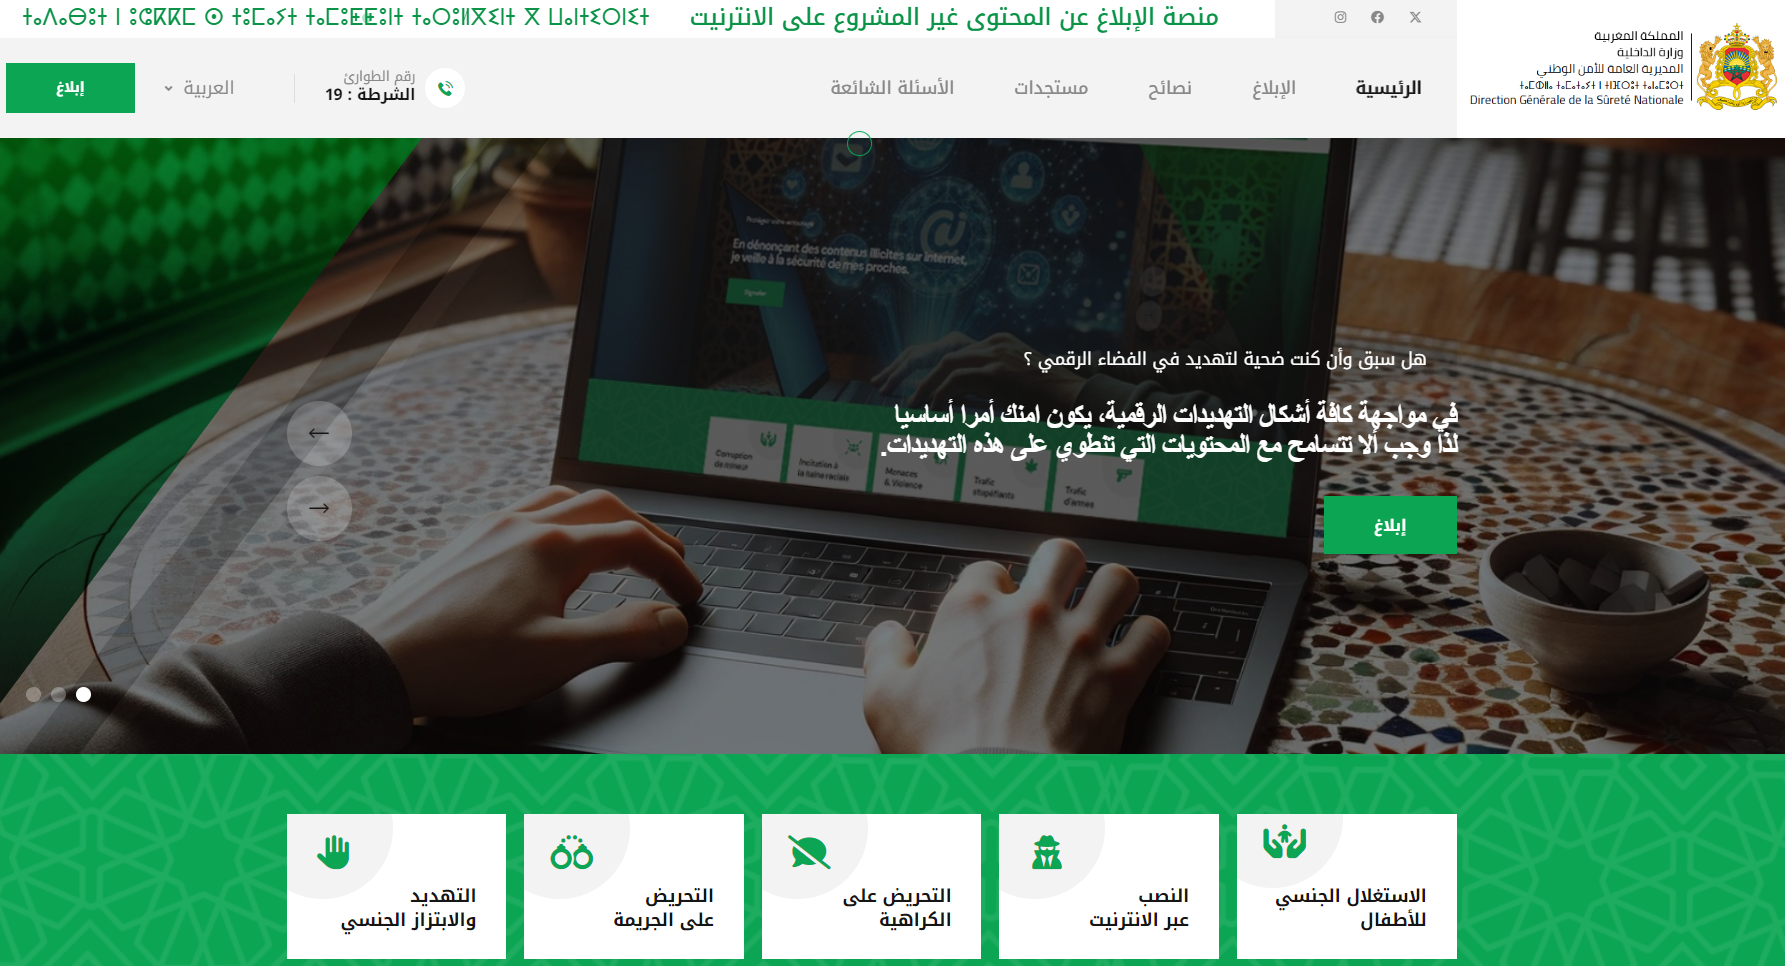 La DGSN lance "e-blagh", une nouvelle plateforme pour signaler les contenus illégaux sur Internet